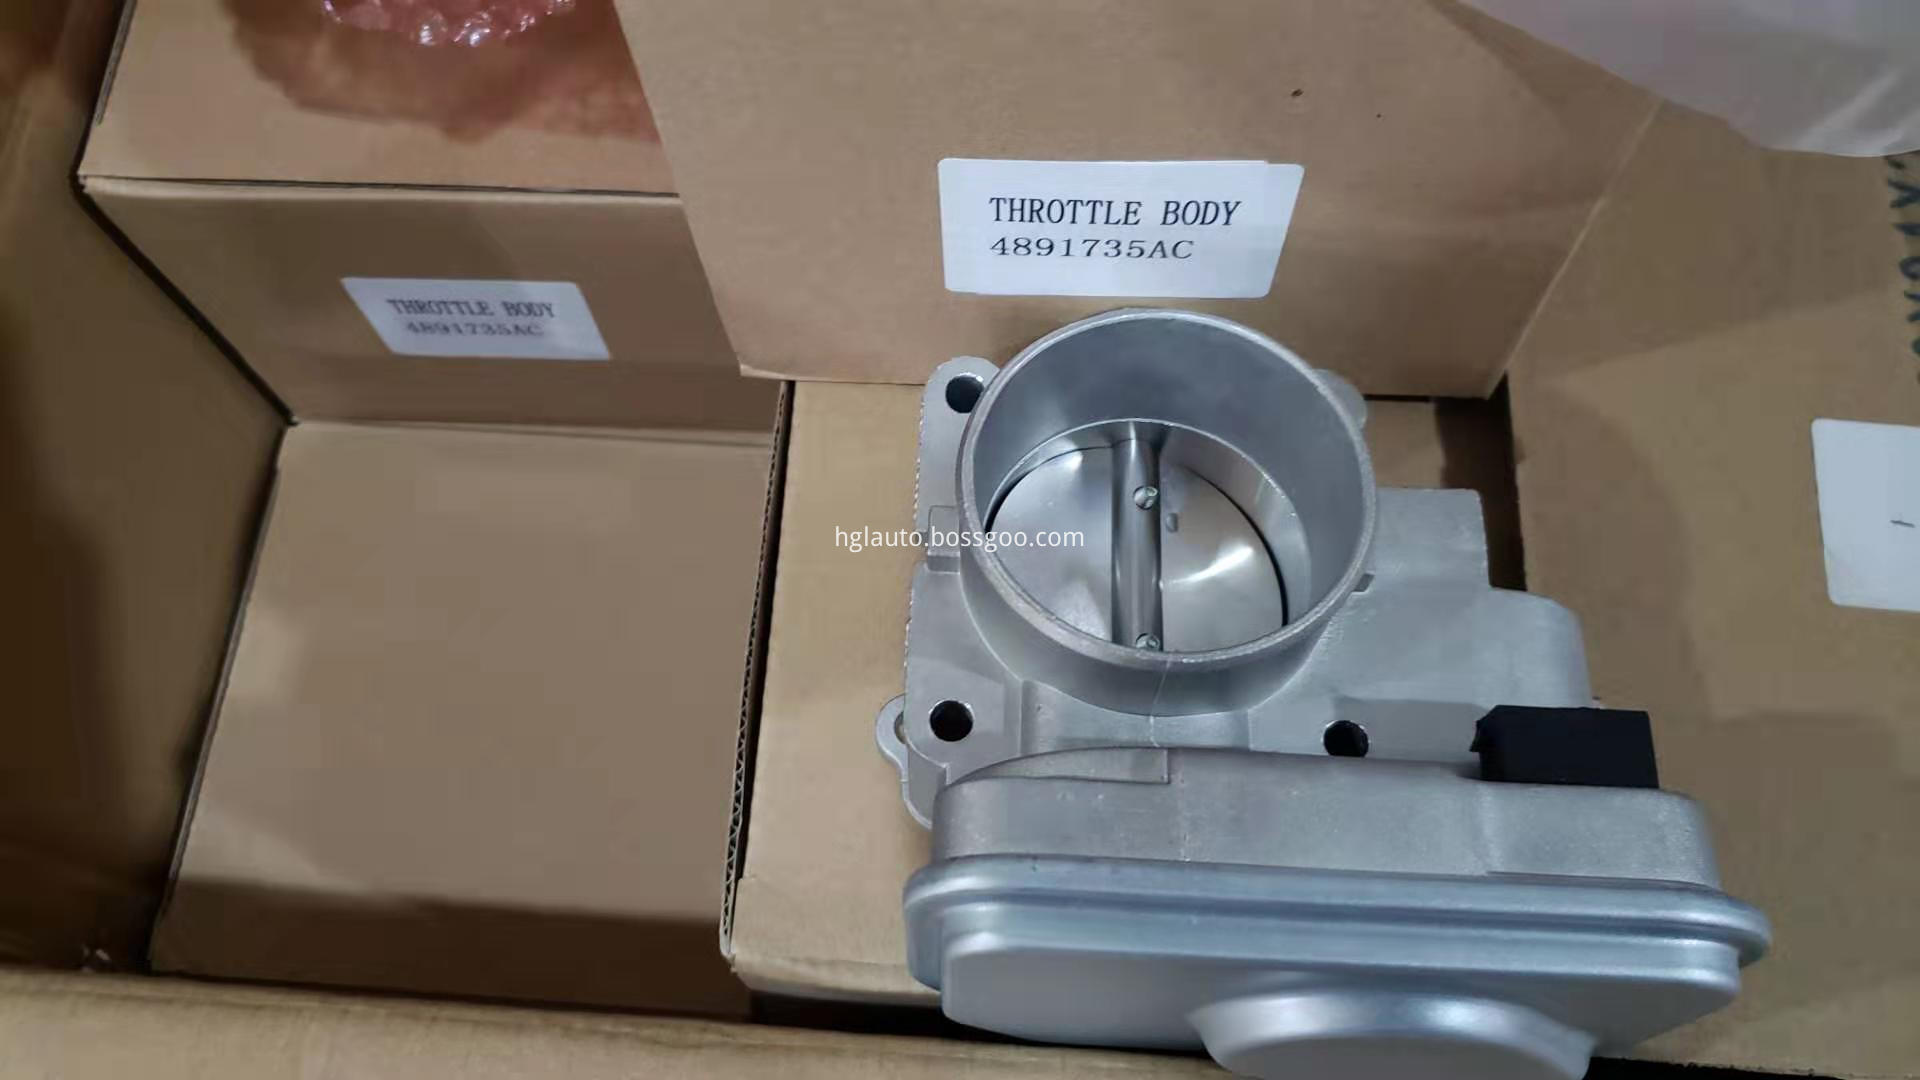 HGL-TRB-001 throttle body 4891735AC